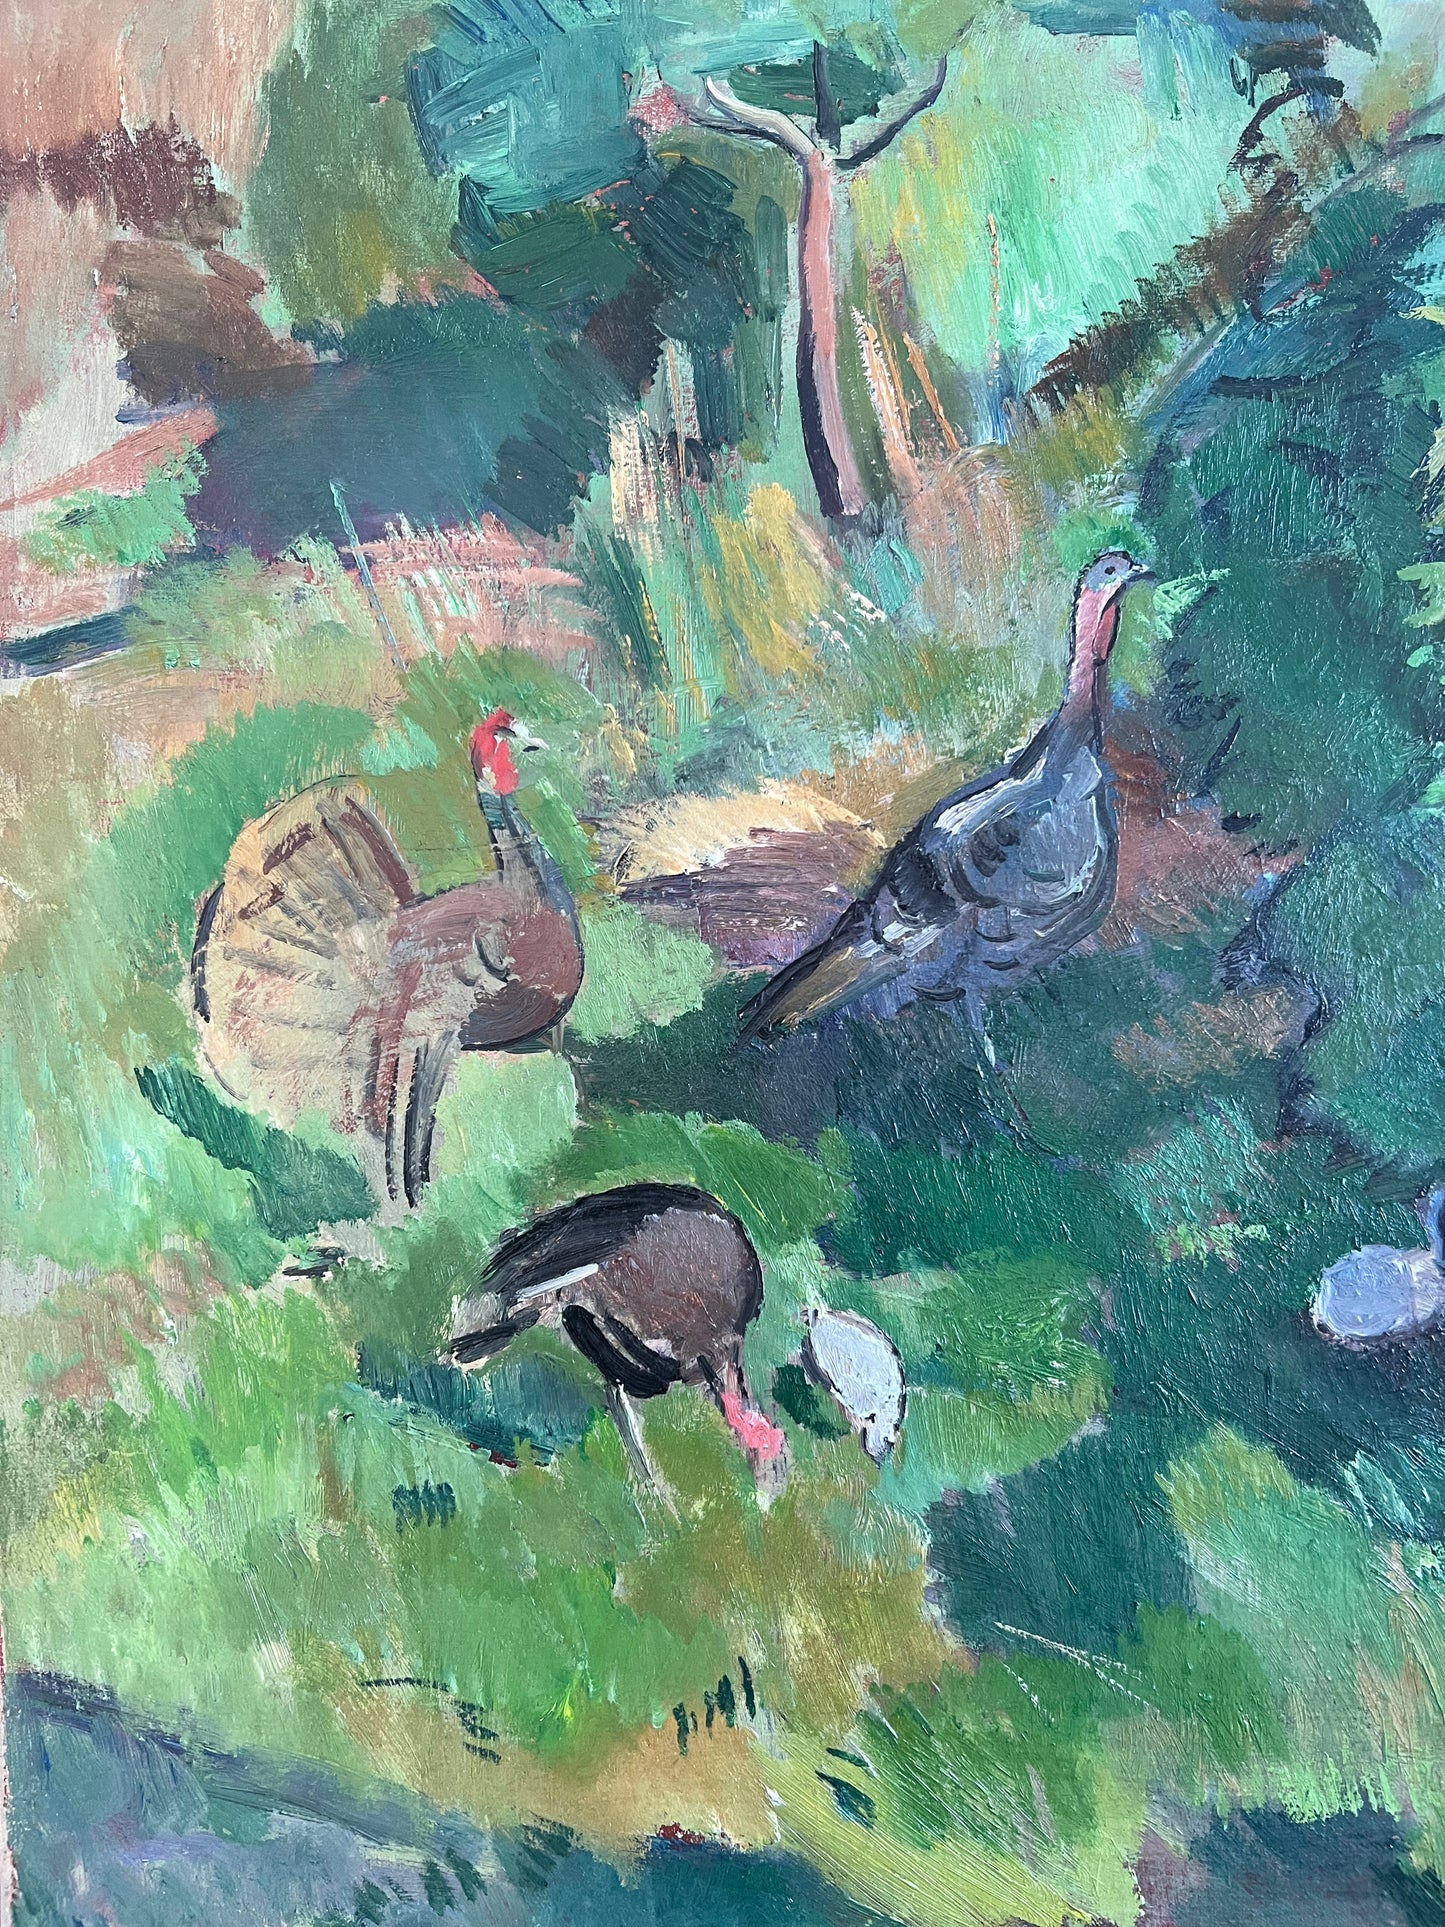 Oda Peters. Turkeys in the garden, 1920’s